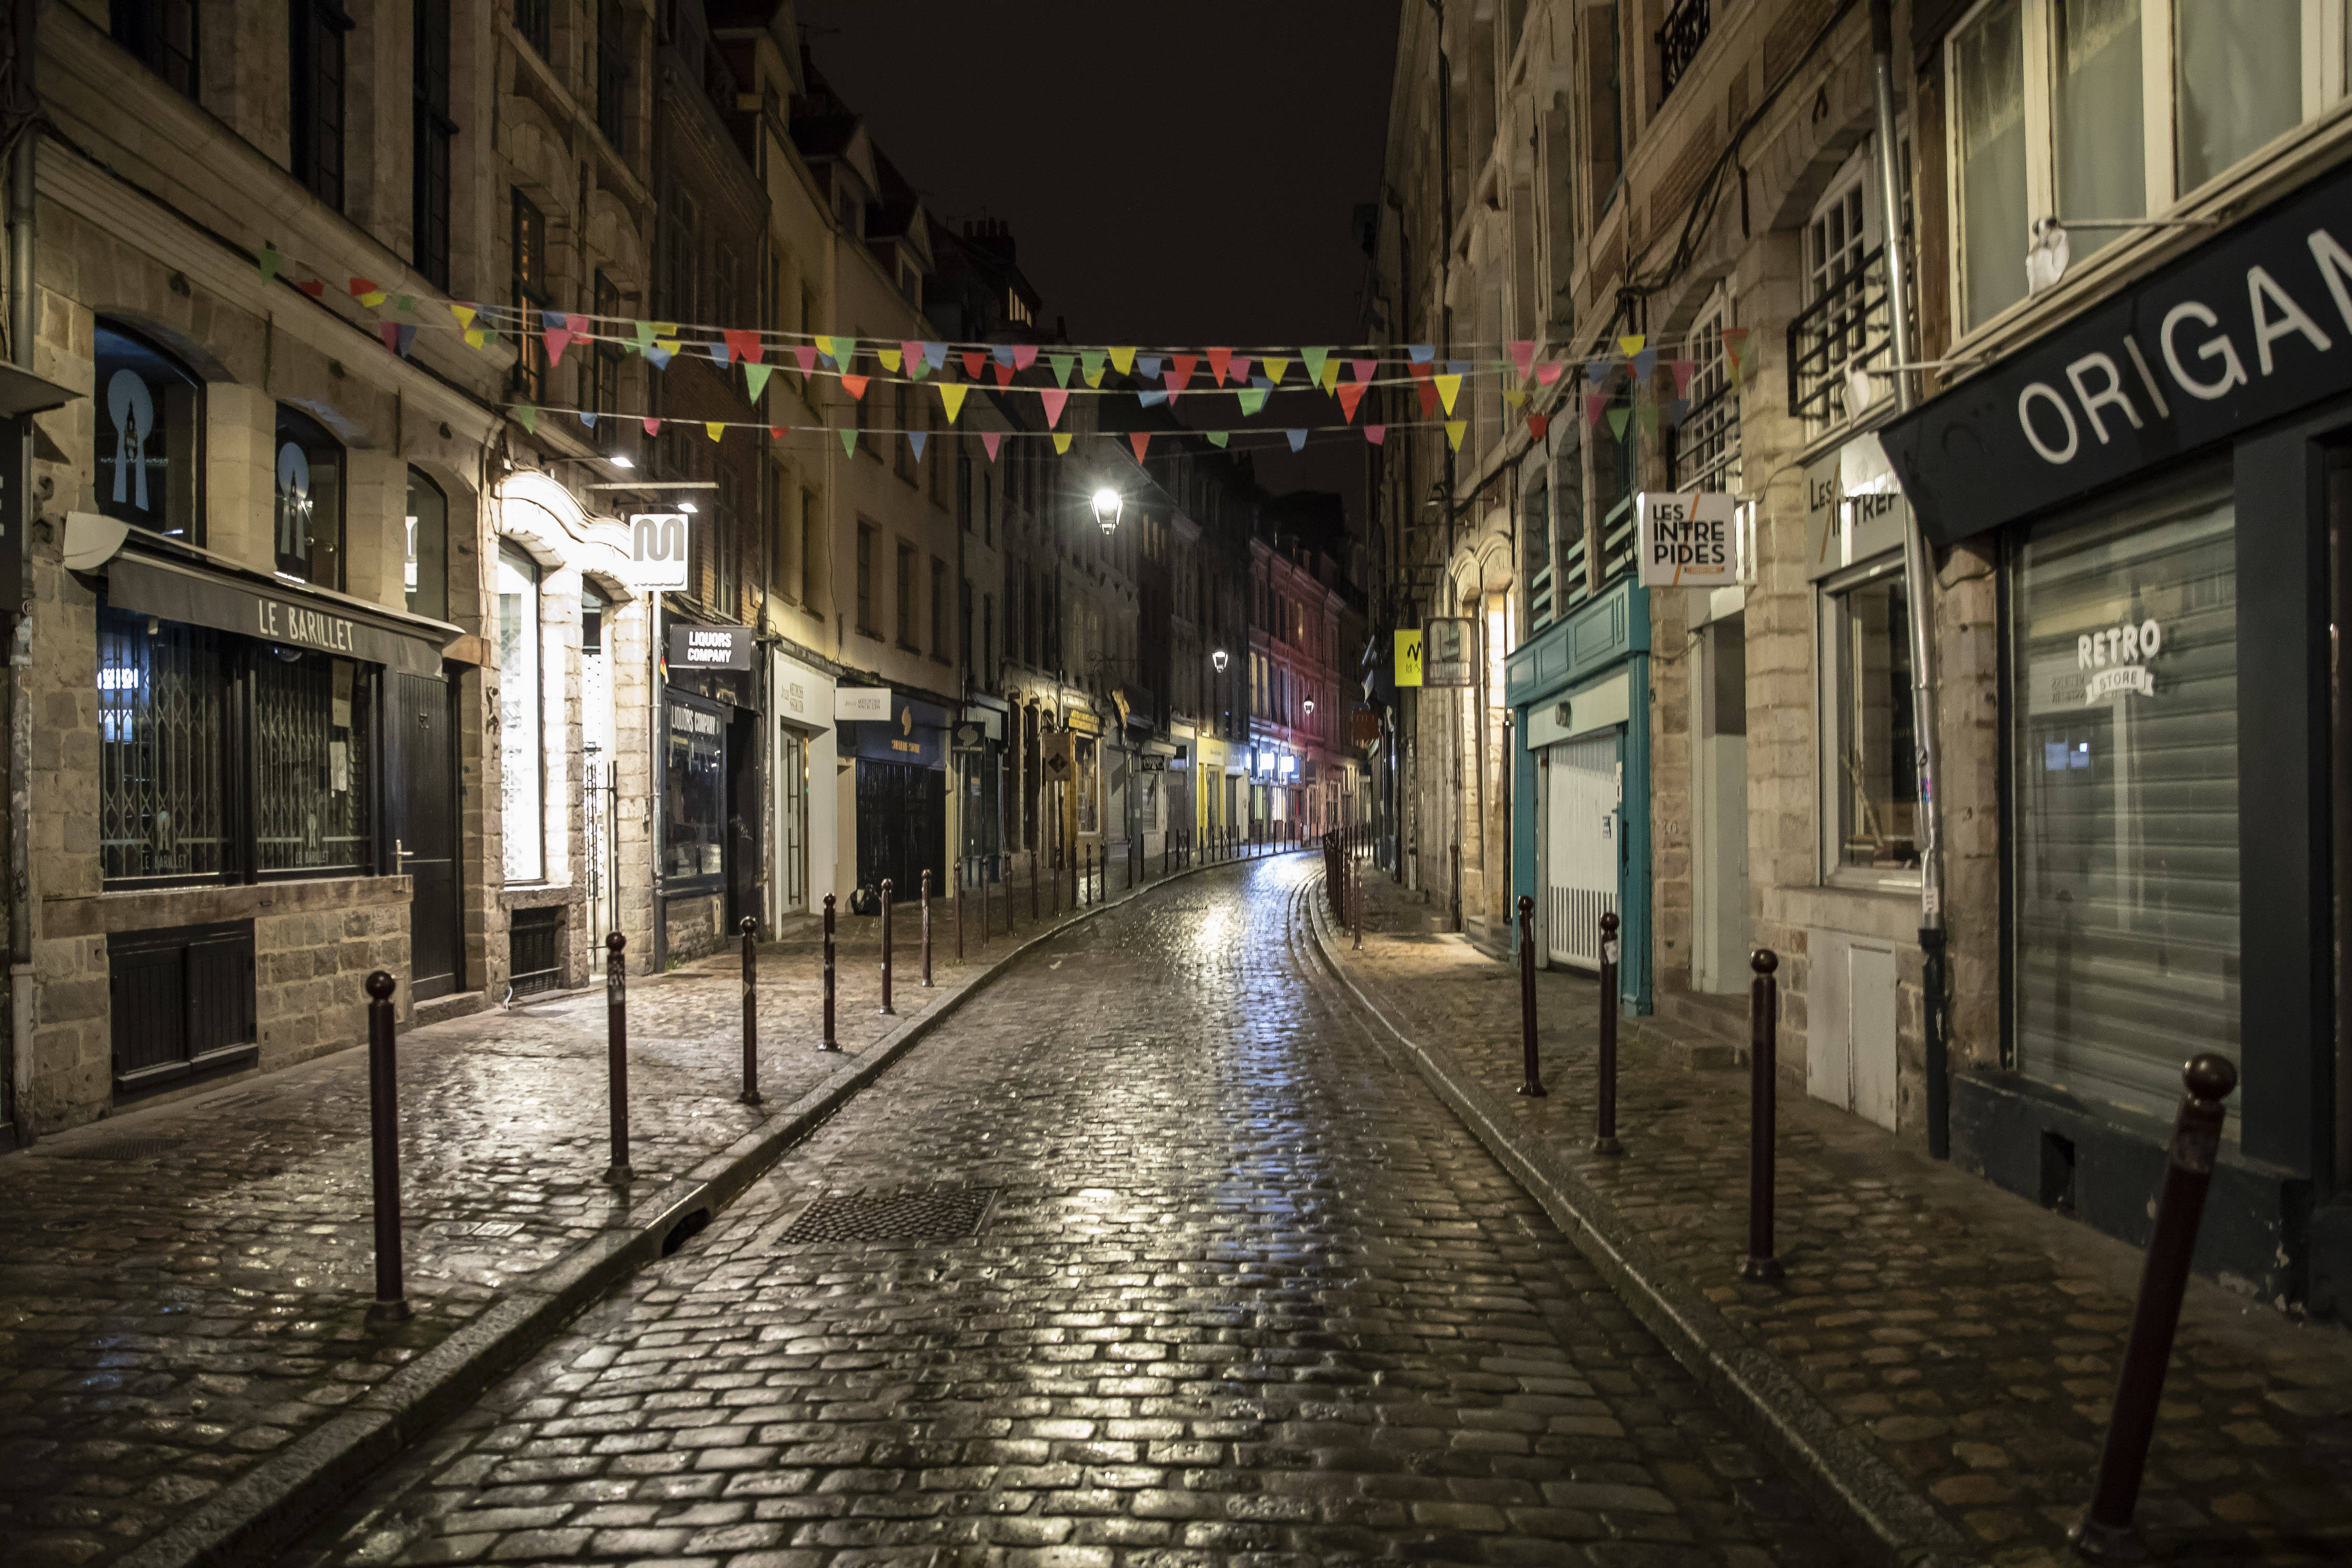 10月17日晚间,在法国北部城市里尔,警察在宵禁后的街道上巡逻.